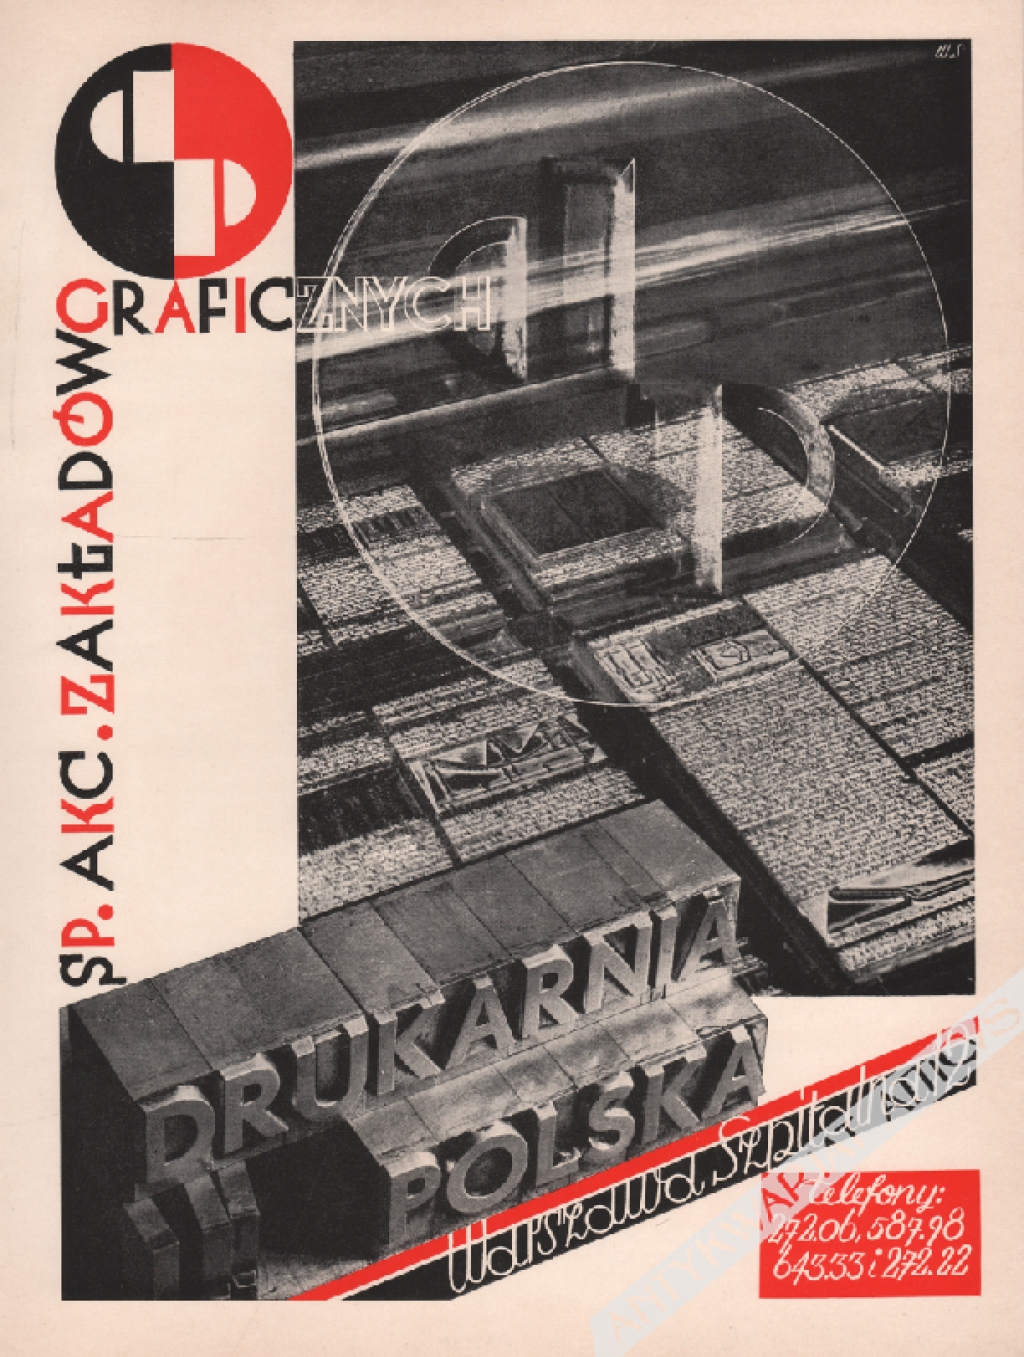 [druk reklamowy, 1935] Drukarnia Polska Sp. Akc. Zakładów Graficznych, Warszawa, Szpitalna 12